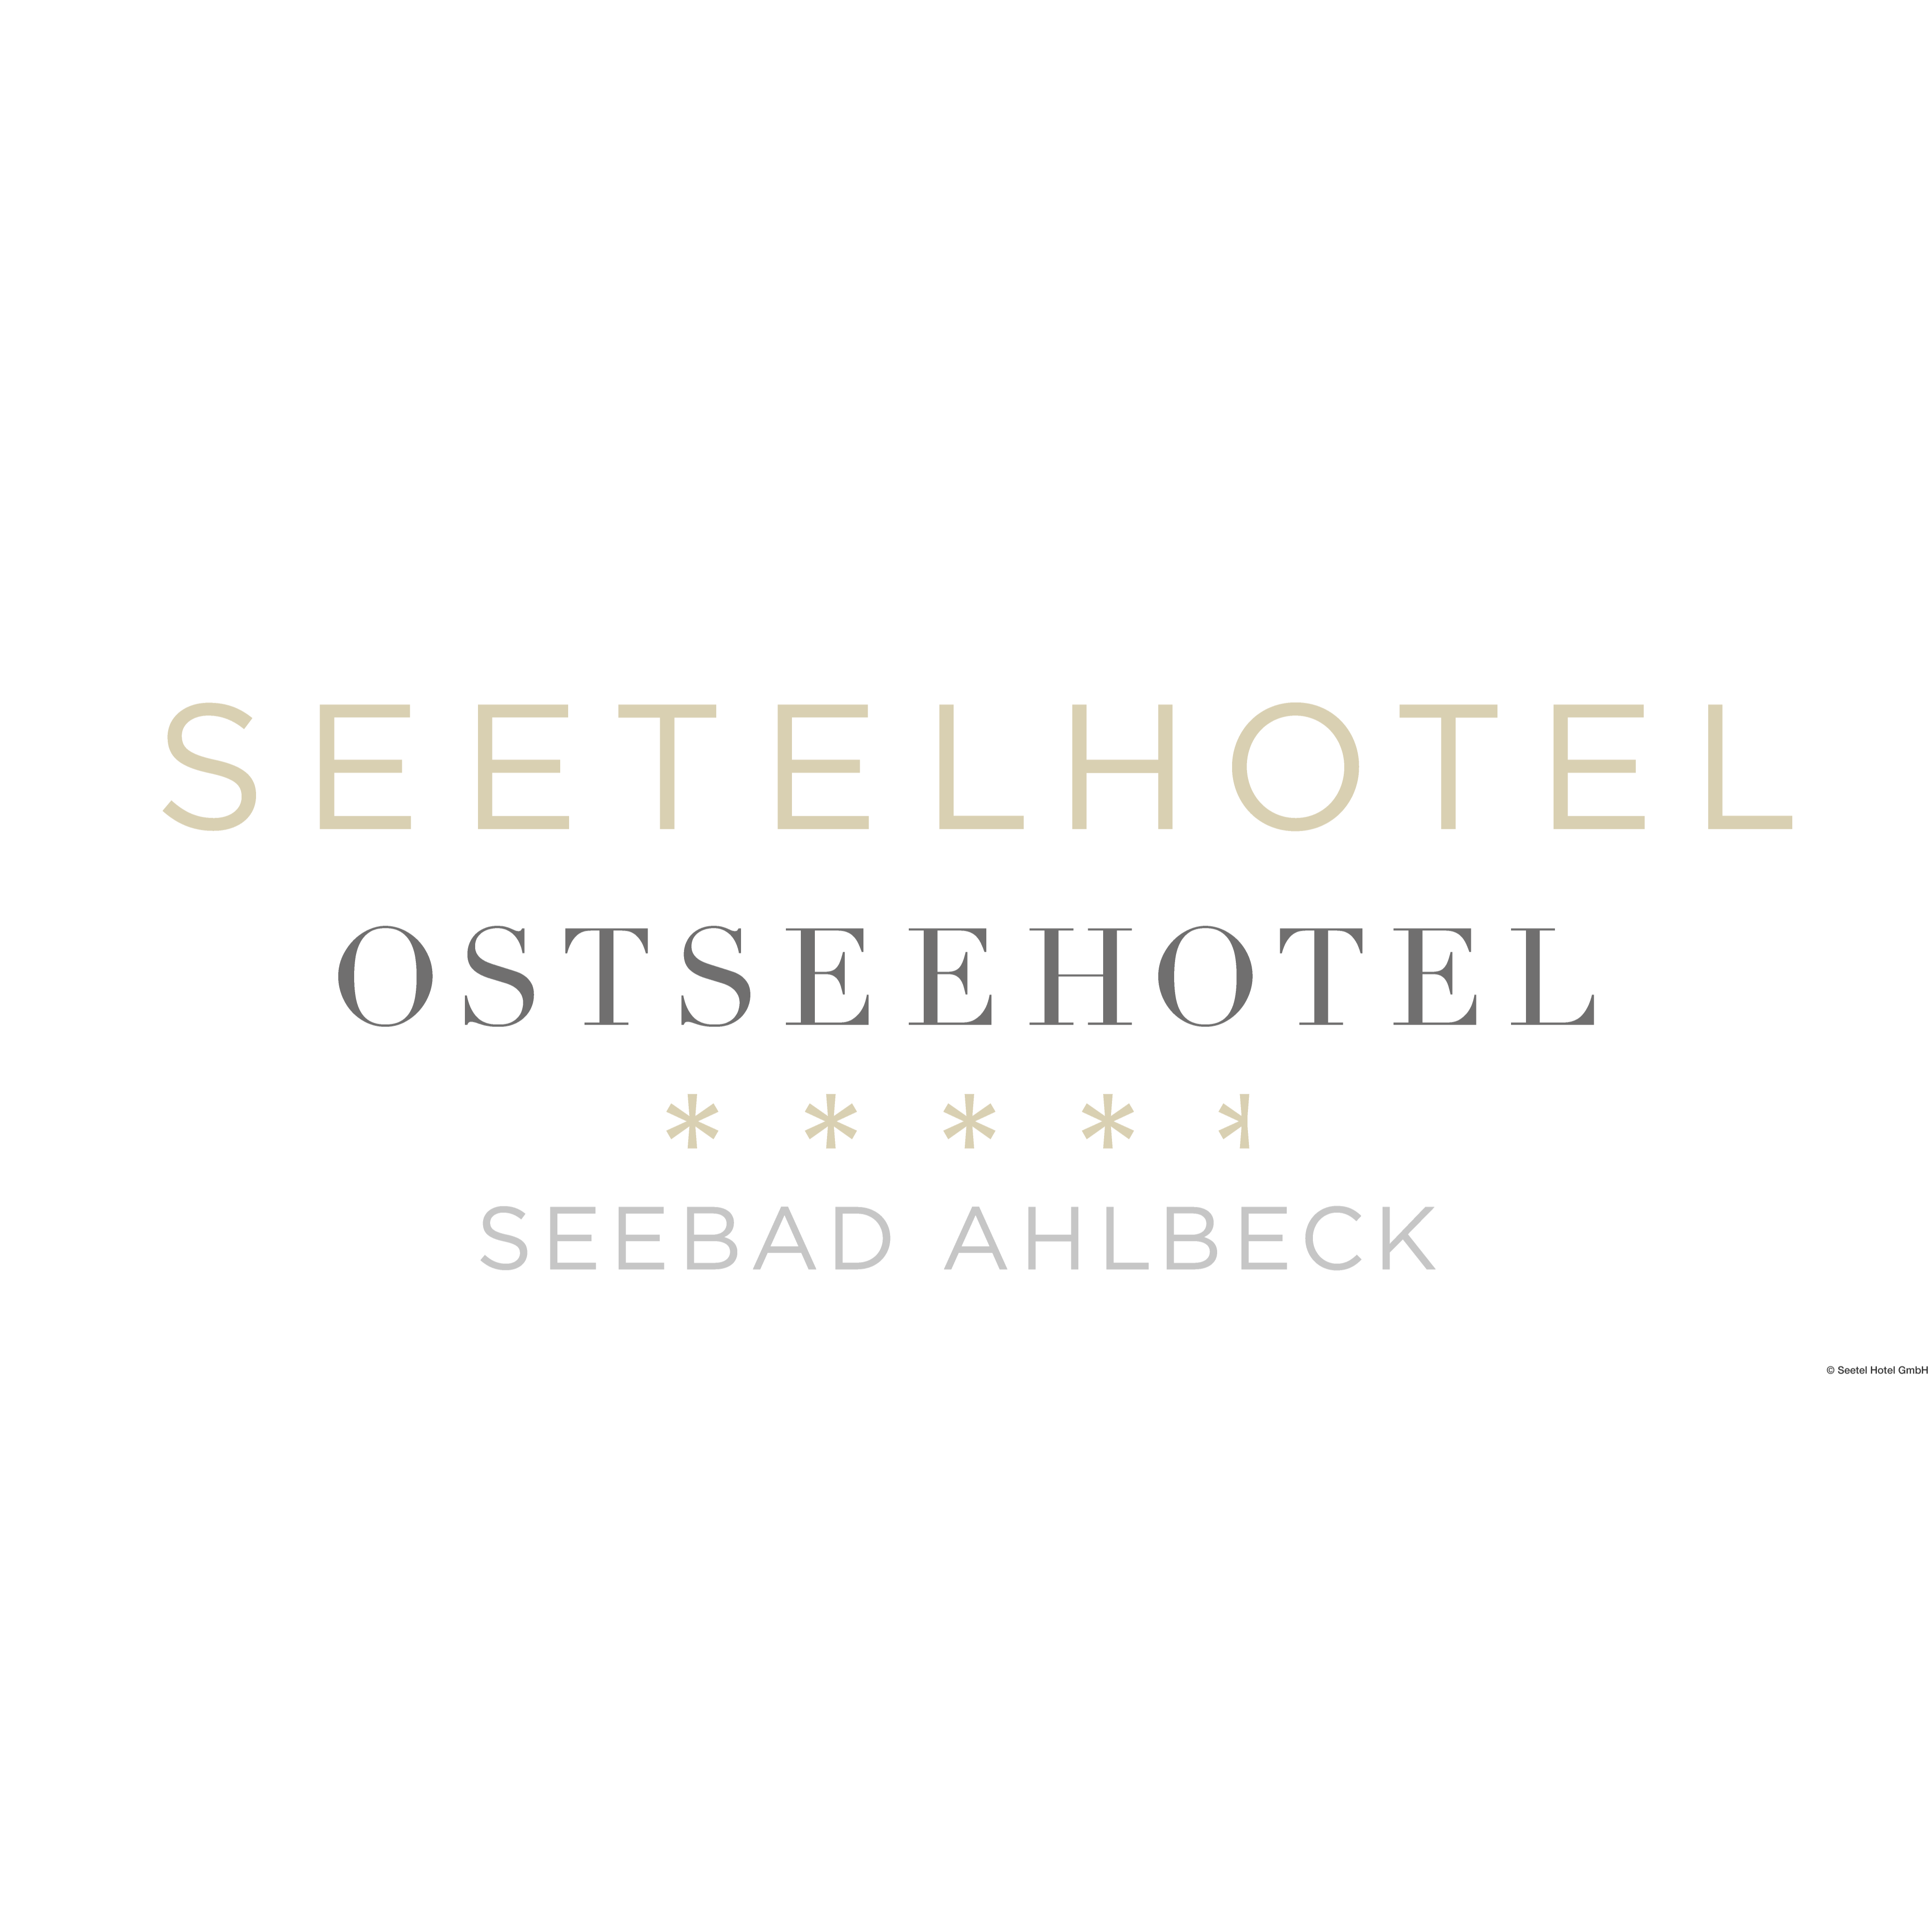 SEETELHOTEL Ostseehotel Ahlbeck in Ostseebad Heringsdorf - Logo